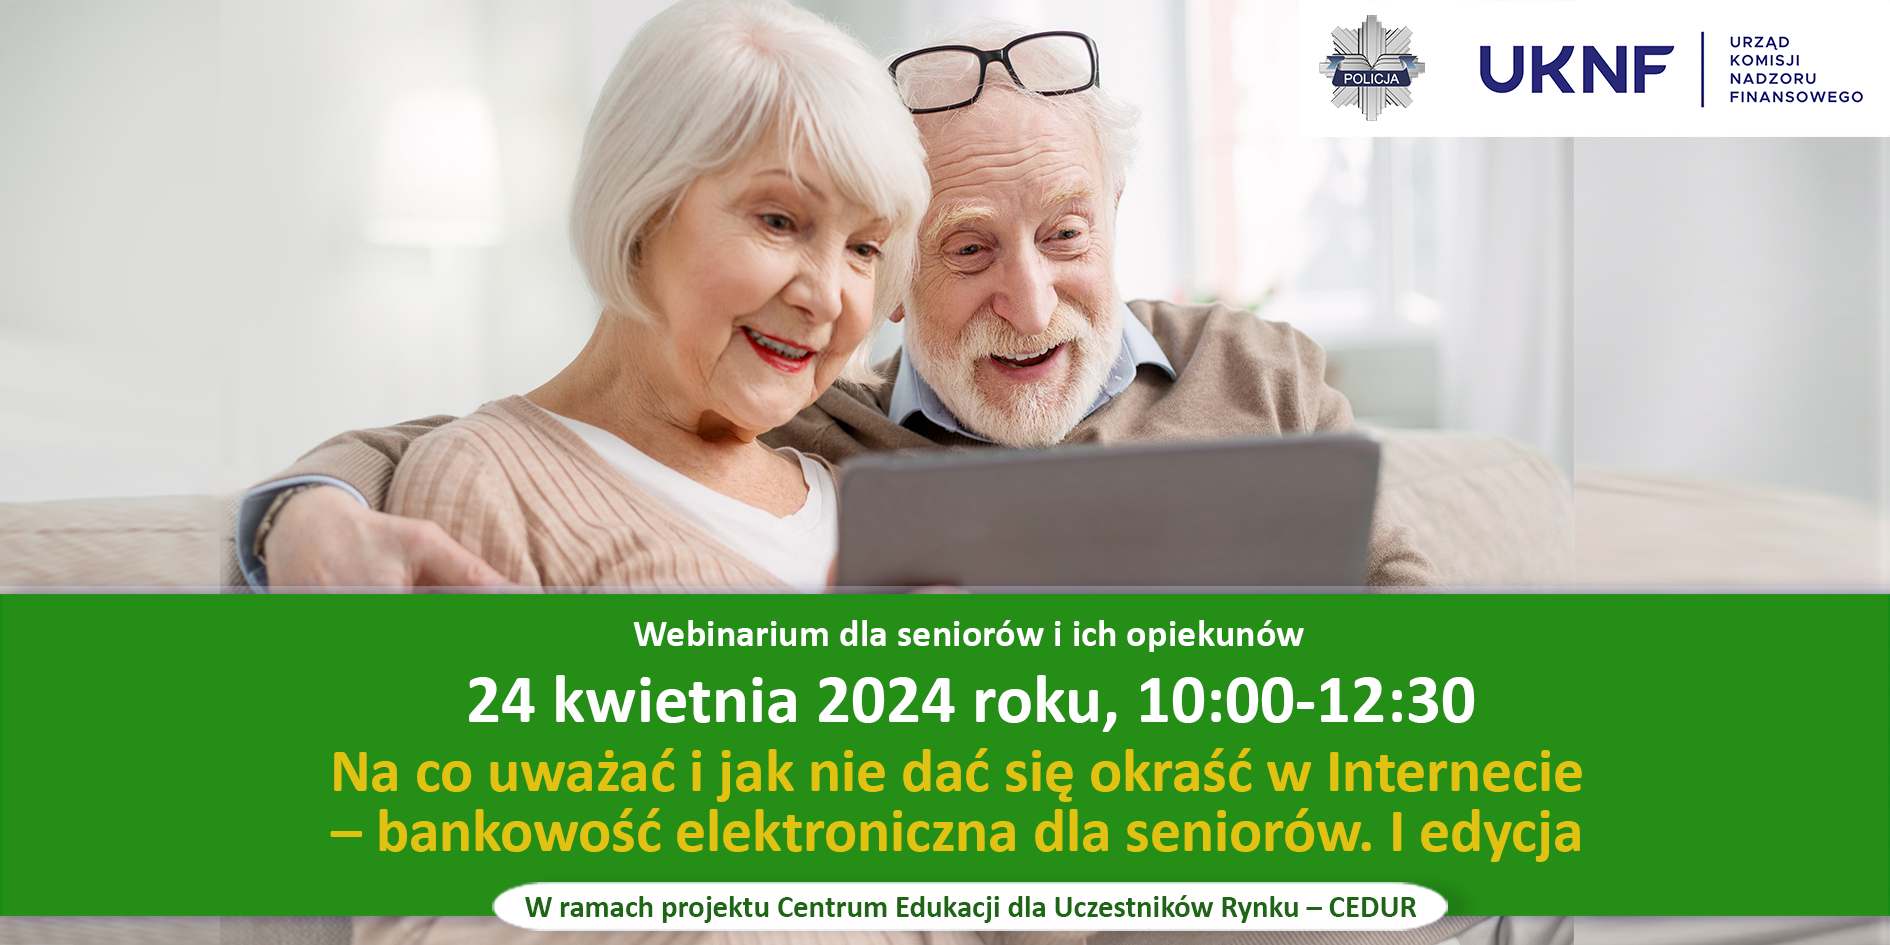 knf webinarium CEDUR dla seniorow i ich opiekunow 24 kwietnia 2024 roku wieksza 88343